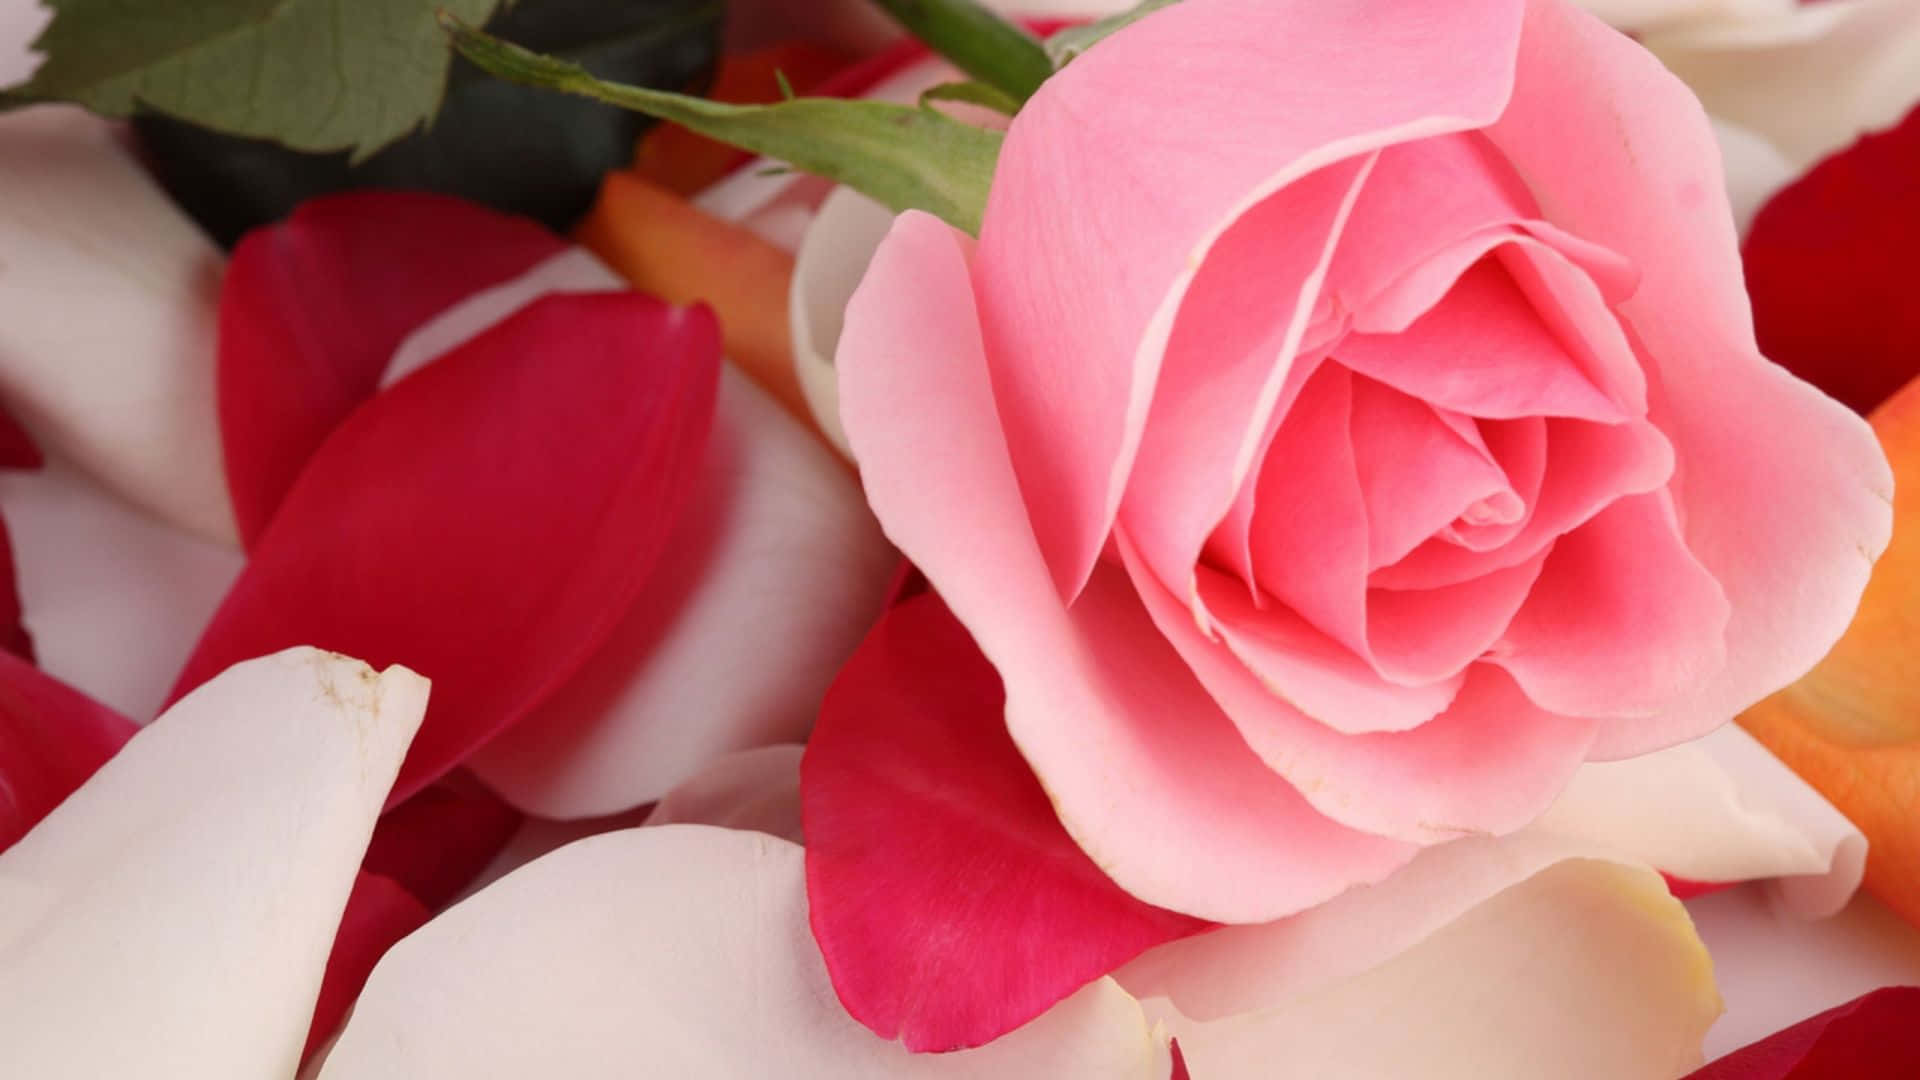 Unarosa Rosa In Fiore Circondata Da Una Folta E Vibrante Vegetazione.